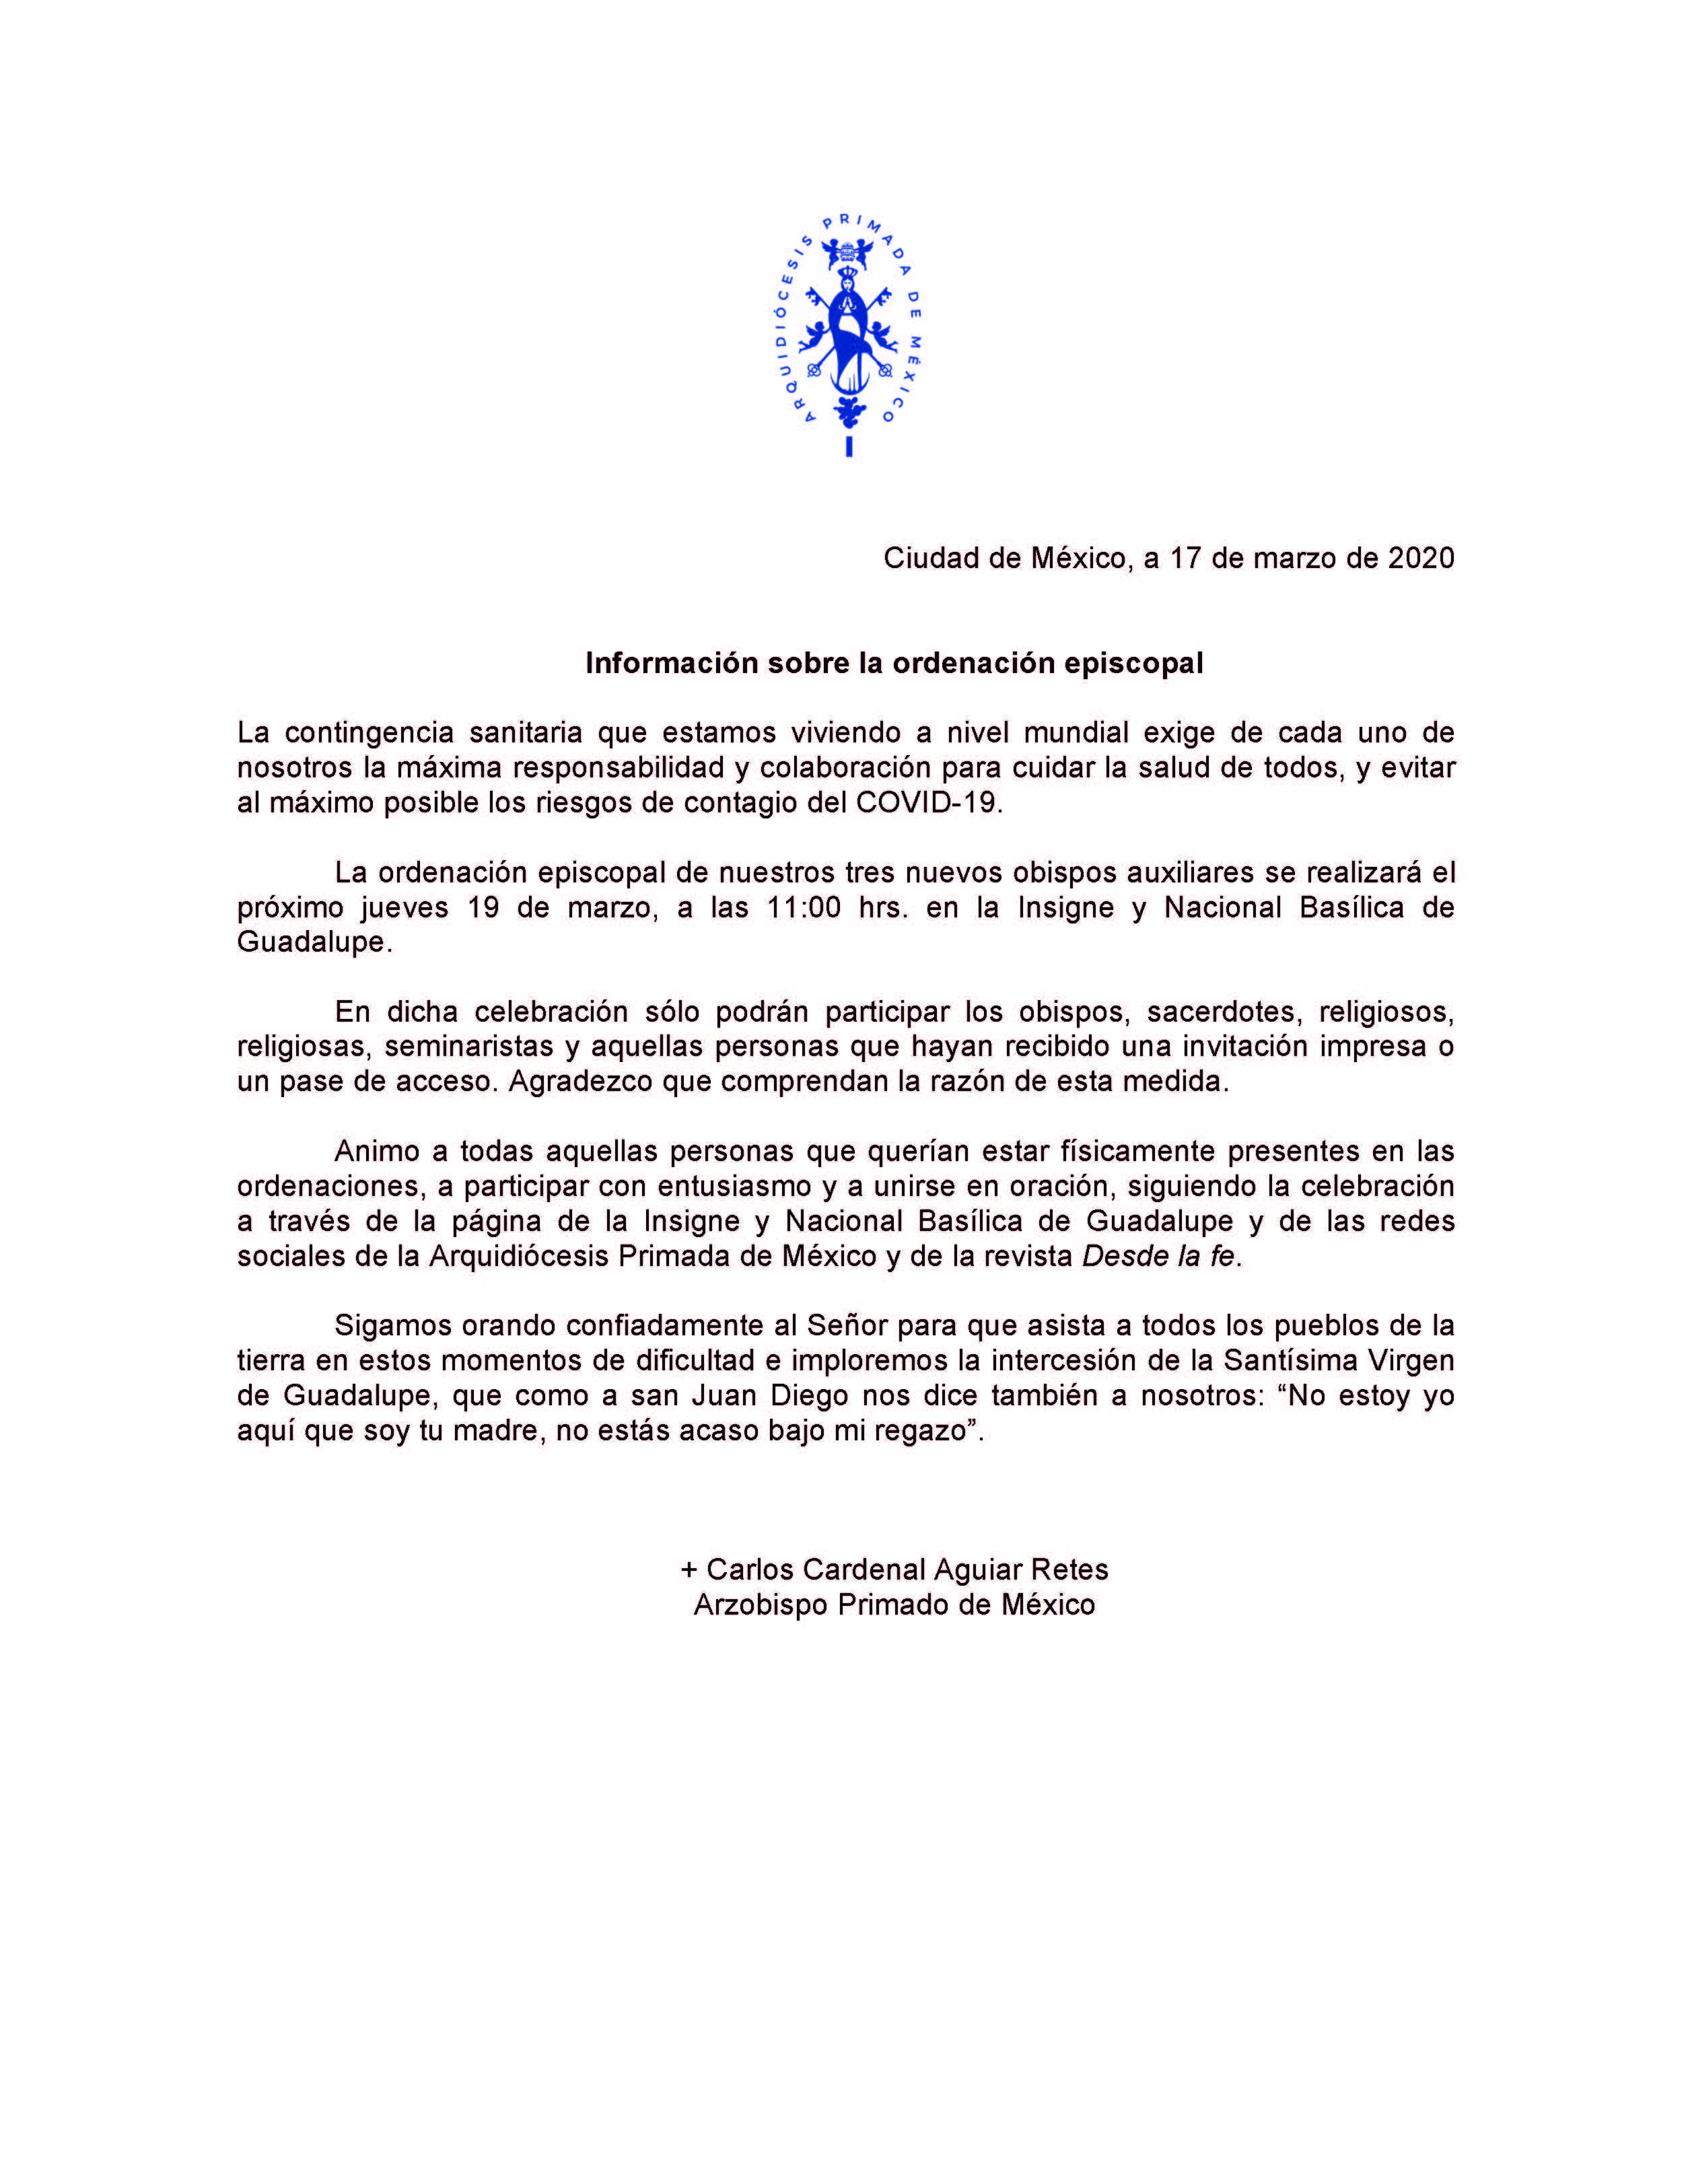 200317 Arquidiócesis Primada de México Comunicado ordenaciones episcopales